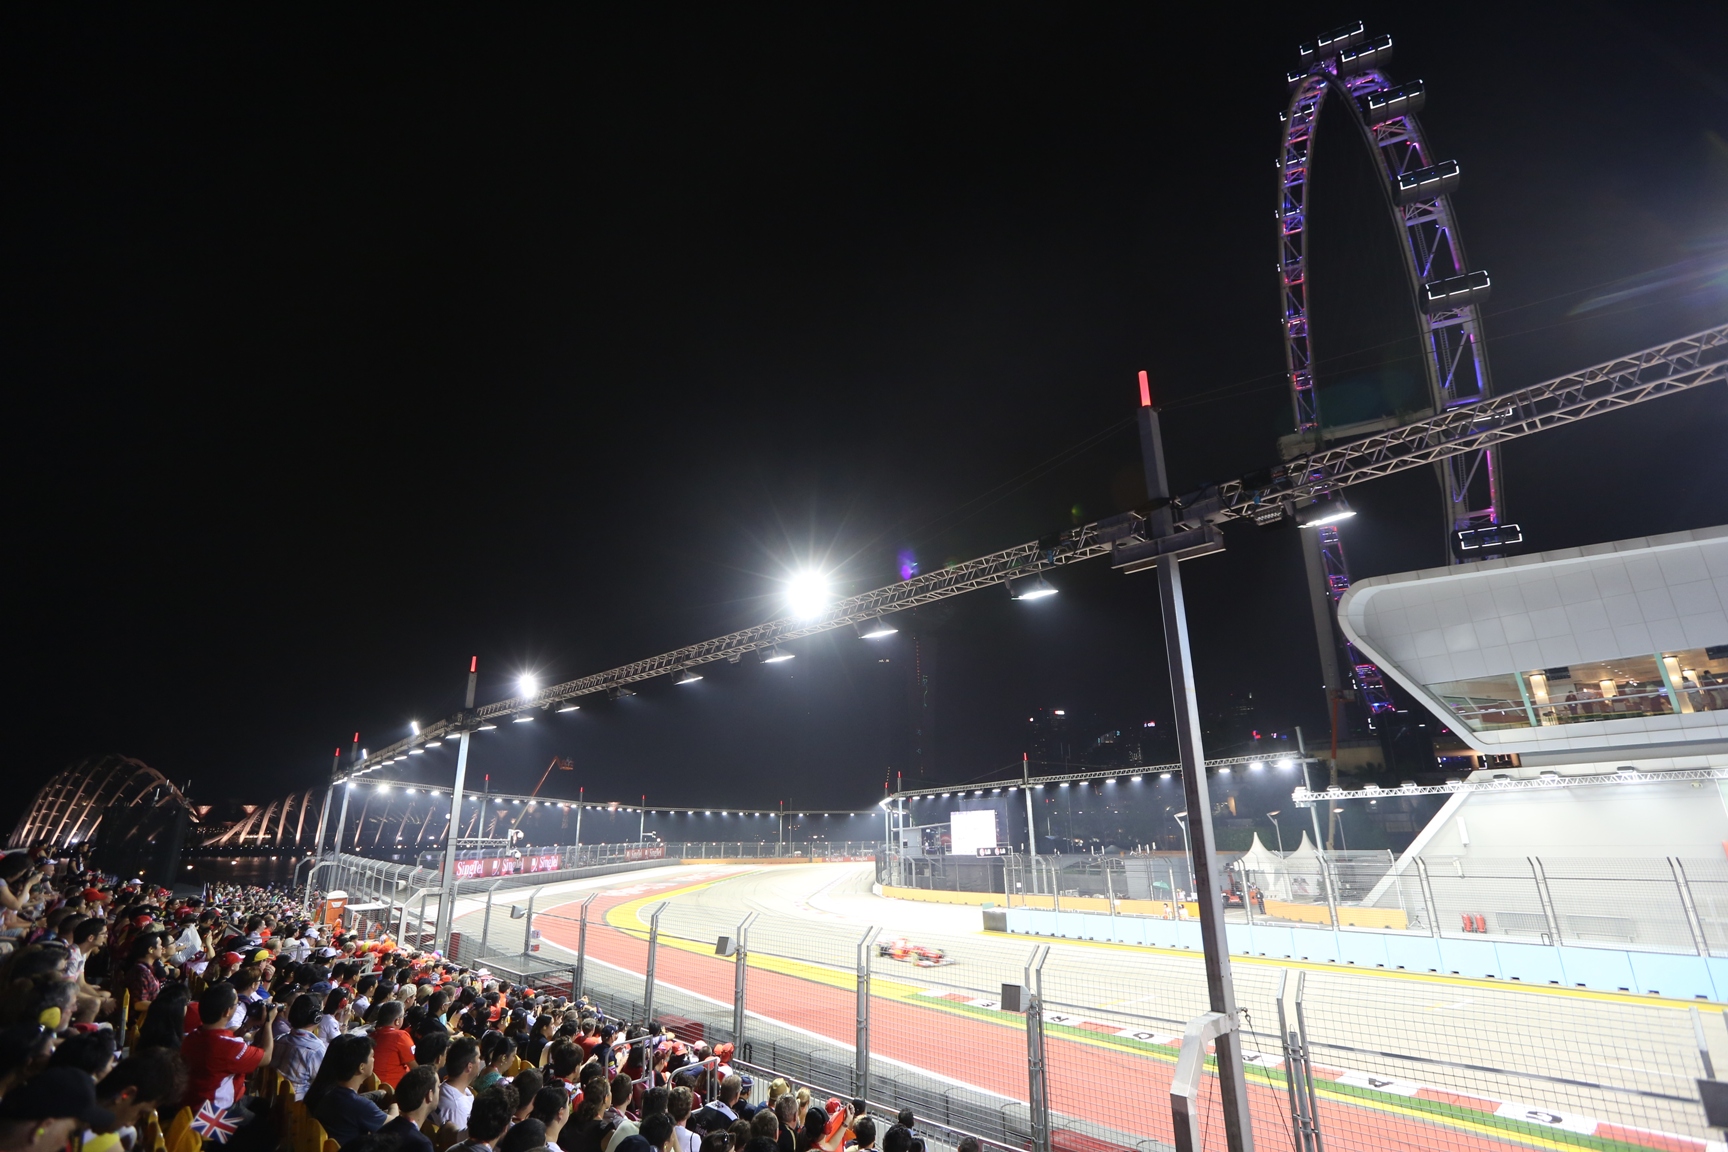 The 2013 Formula 1 Singtel Singapore Grand Prix with Exotissimo